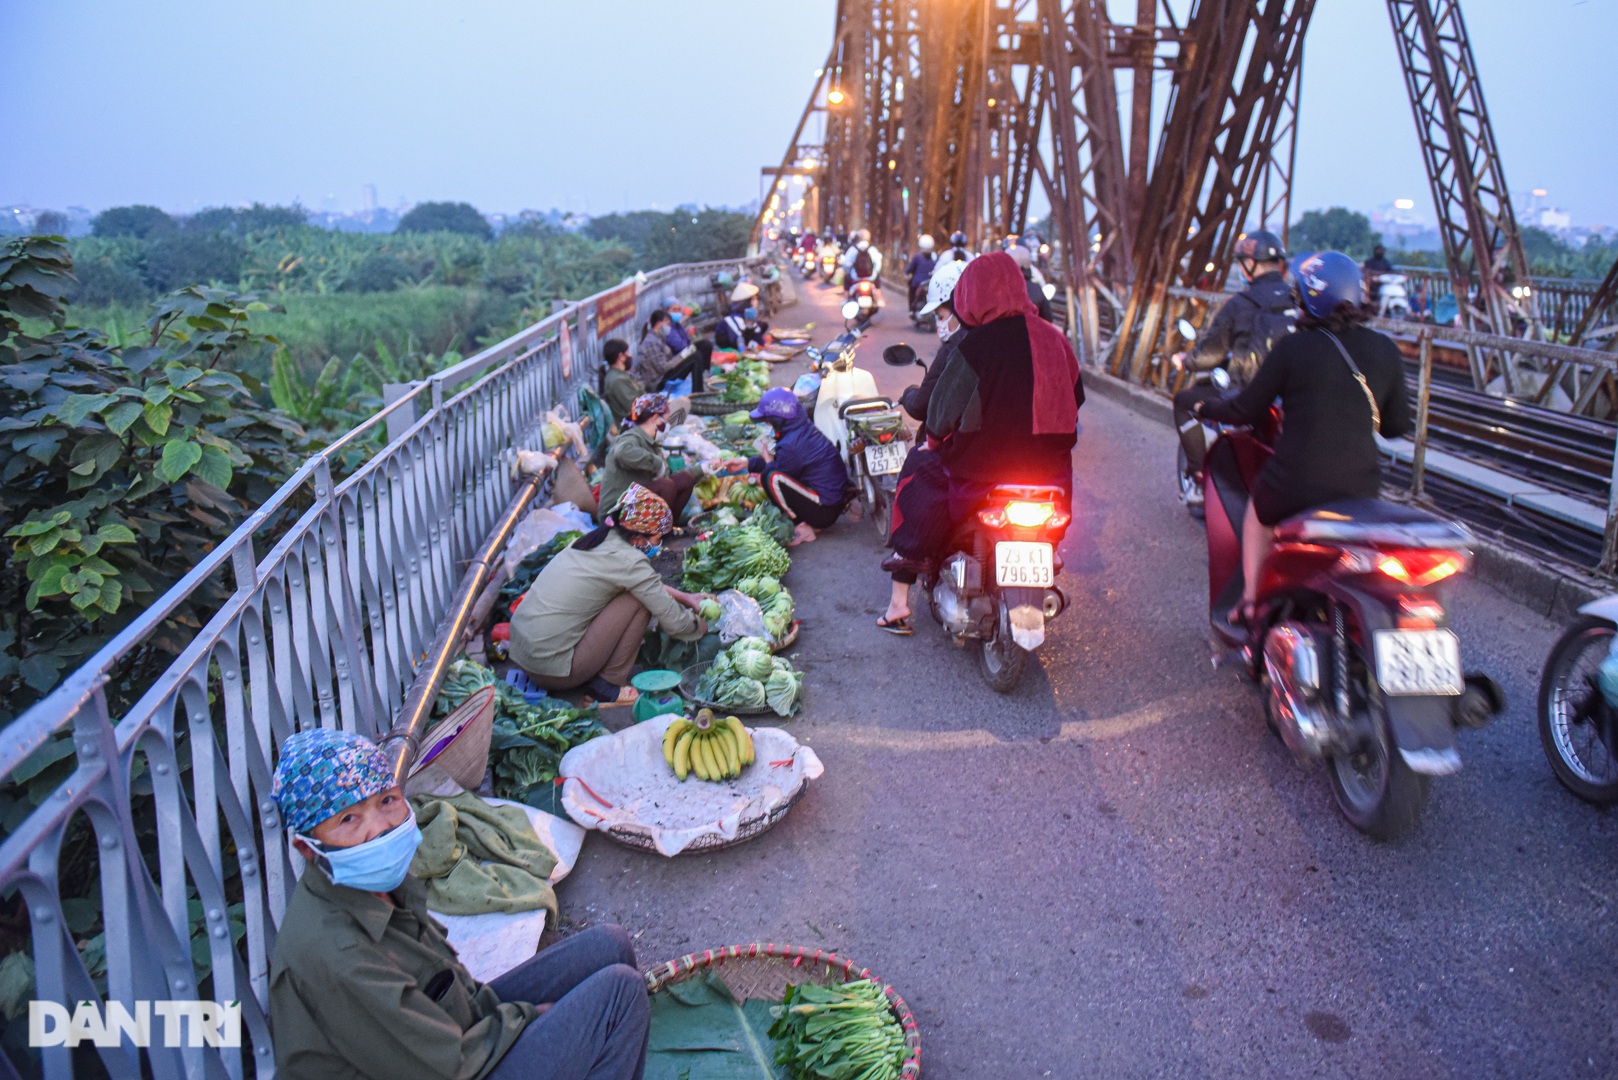 Cảnh họp chợ lộn xộn, giao thông ùn ứ trên cây cầu trăm tuổi ở Hà Nội - 1